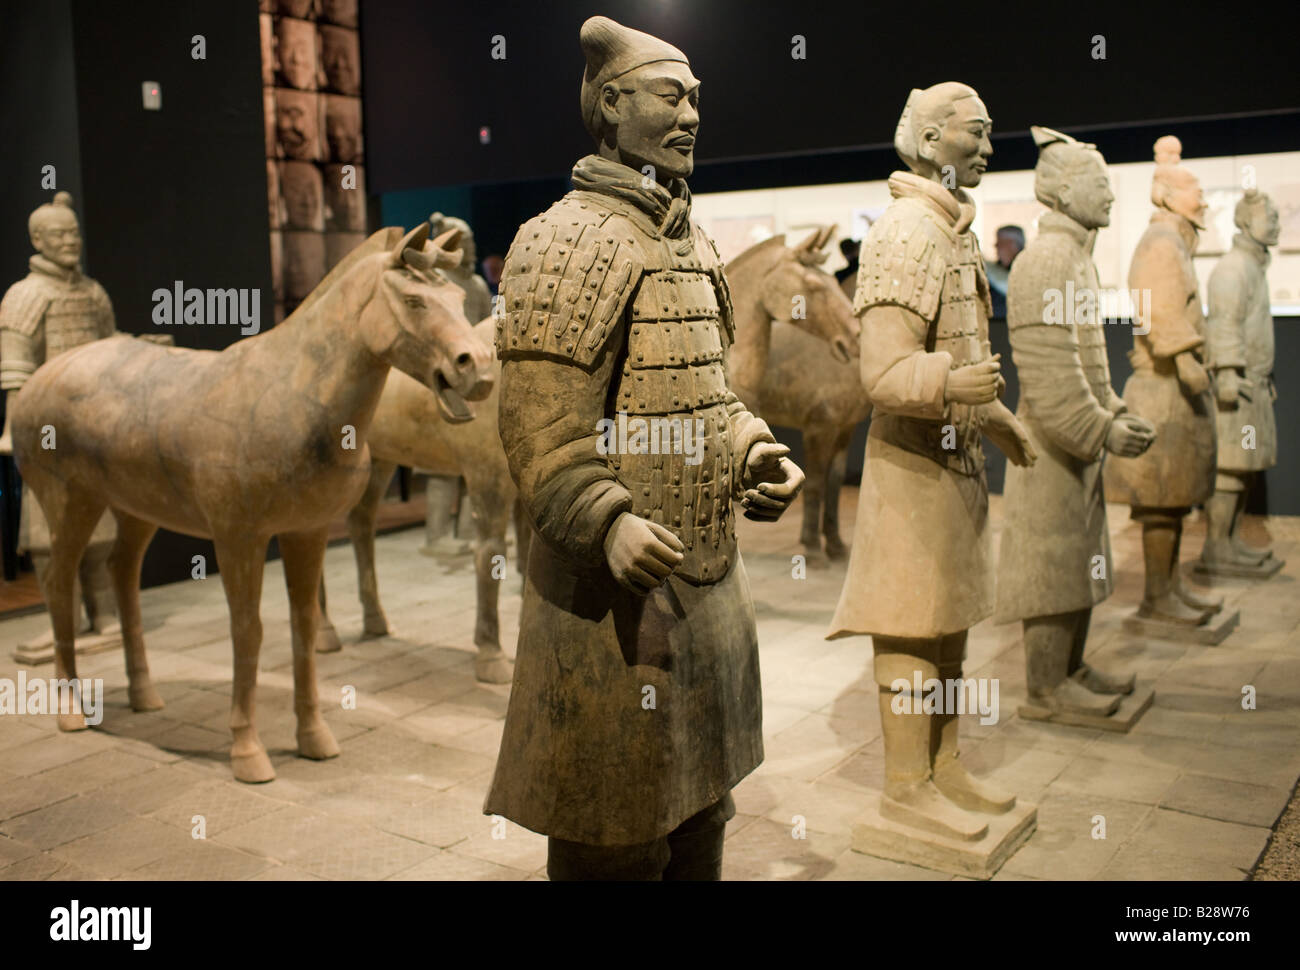 Des soldats et des chevaux en terre cuite sur l'affichage dans le musée d'histoire de Shaanxi Xian Chine Banque D'Images